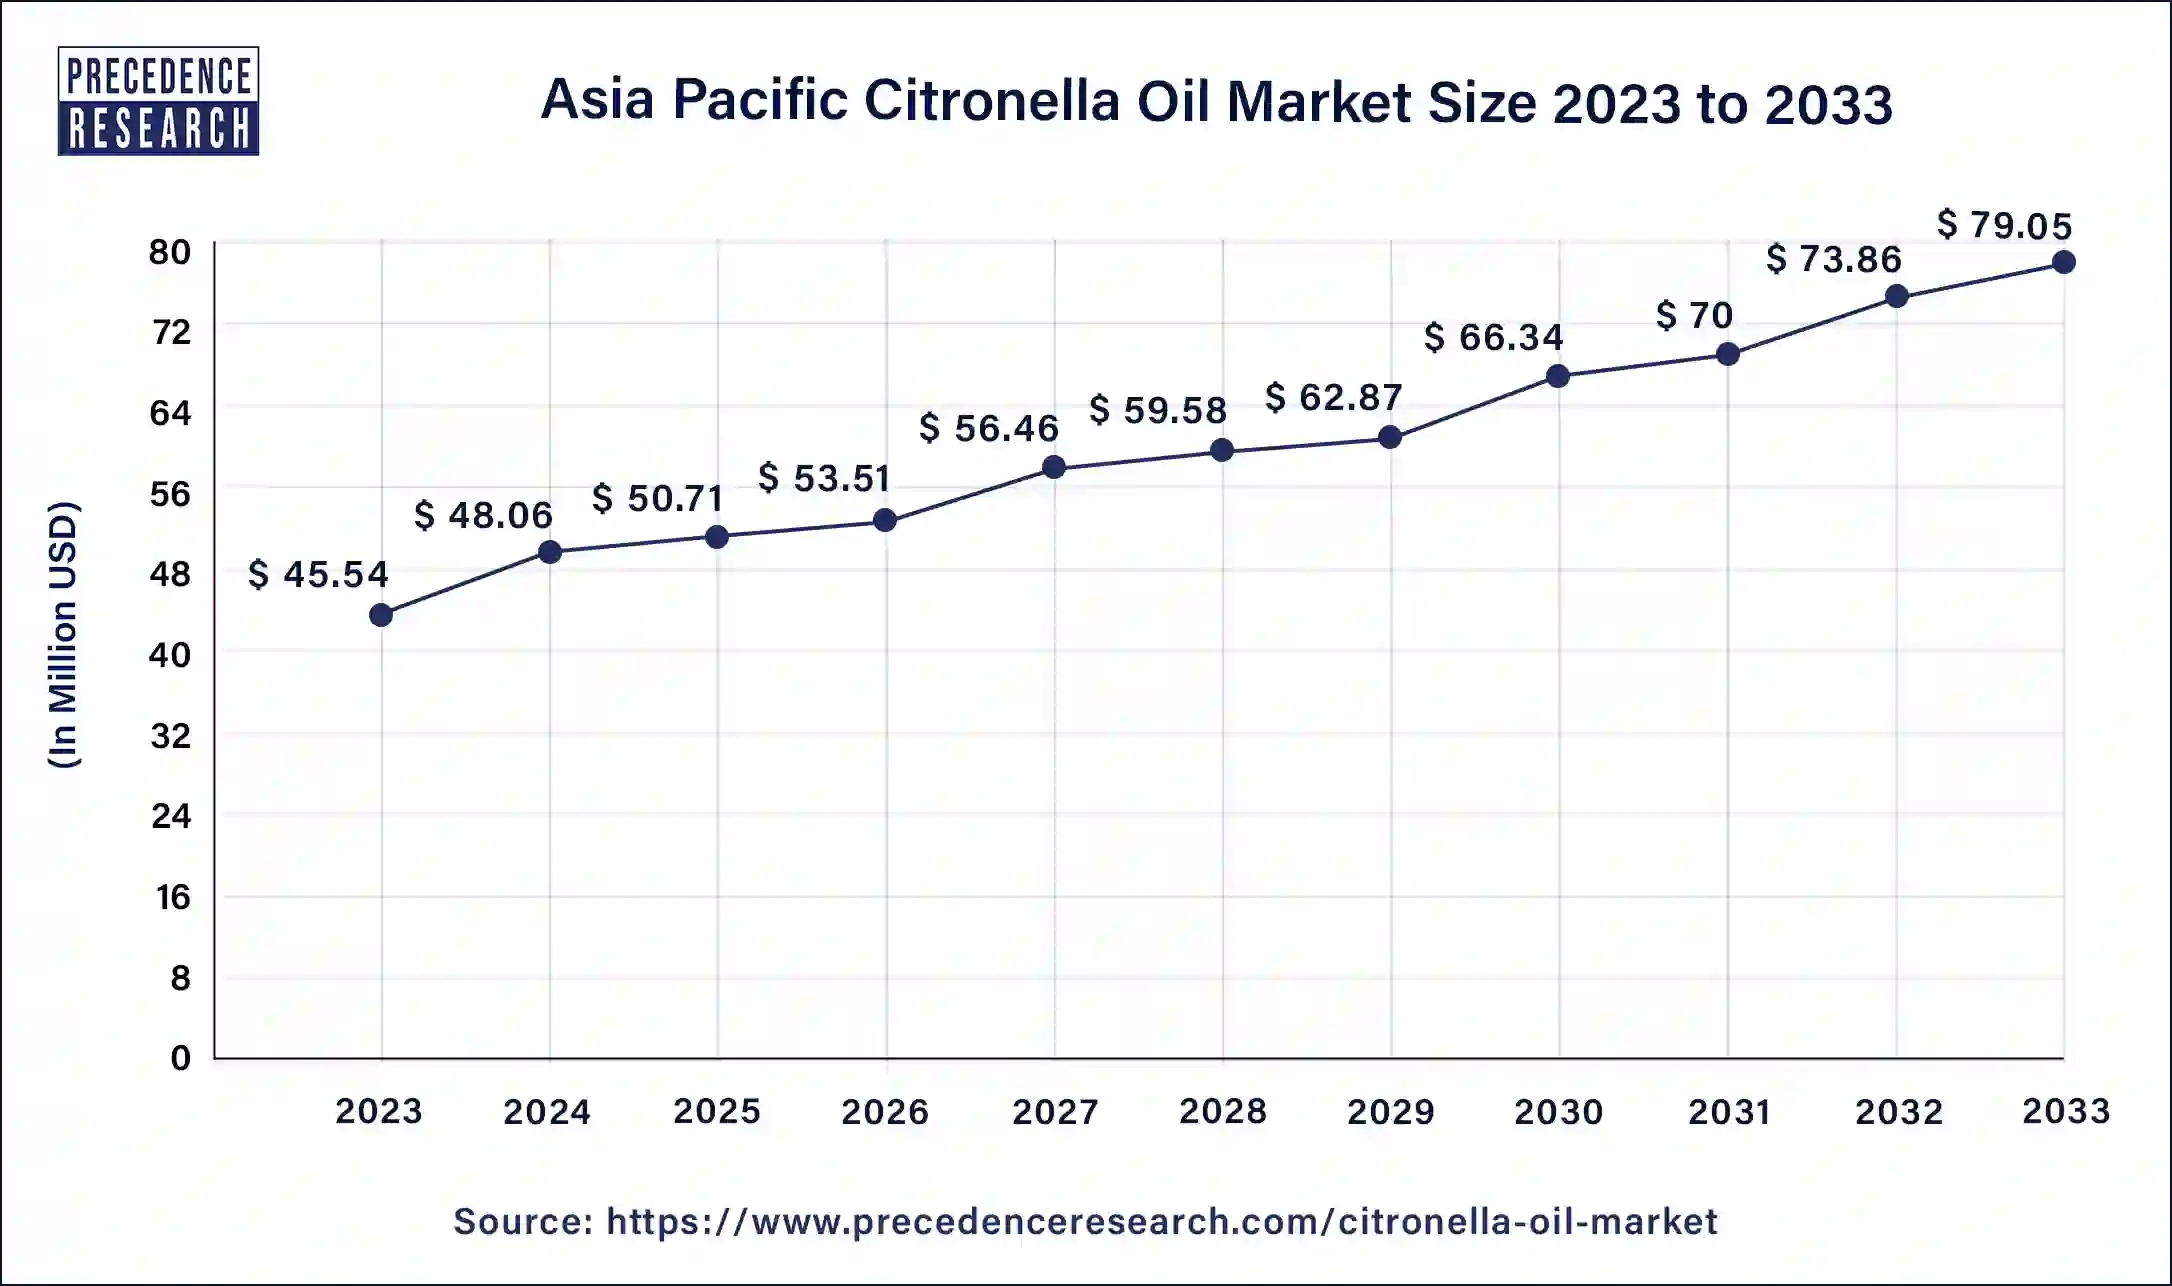 Asia Pacific Citronella Oil Market Size 2024 to 2033